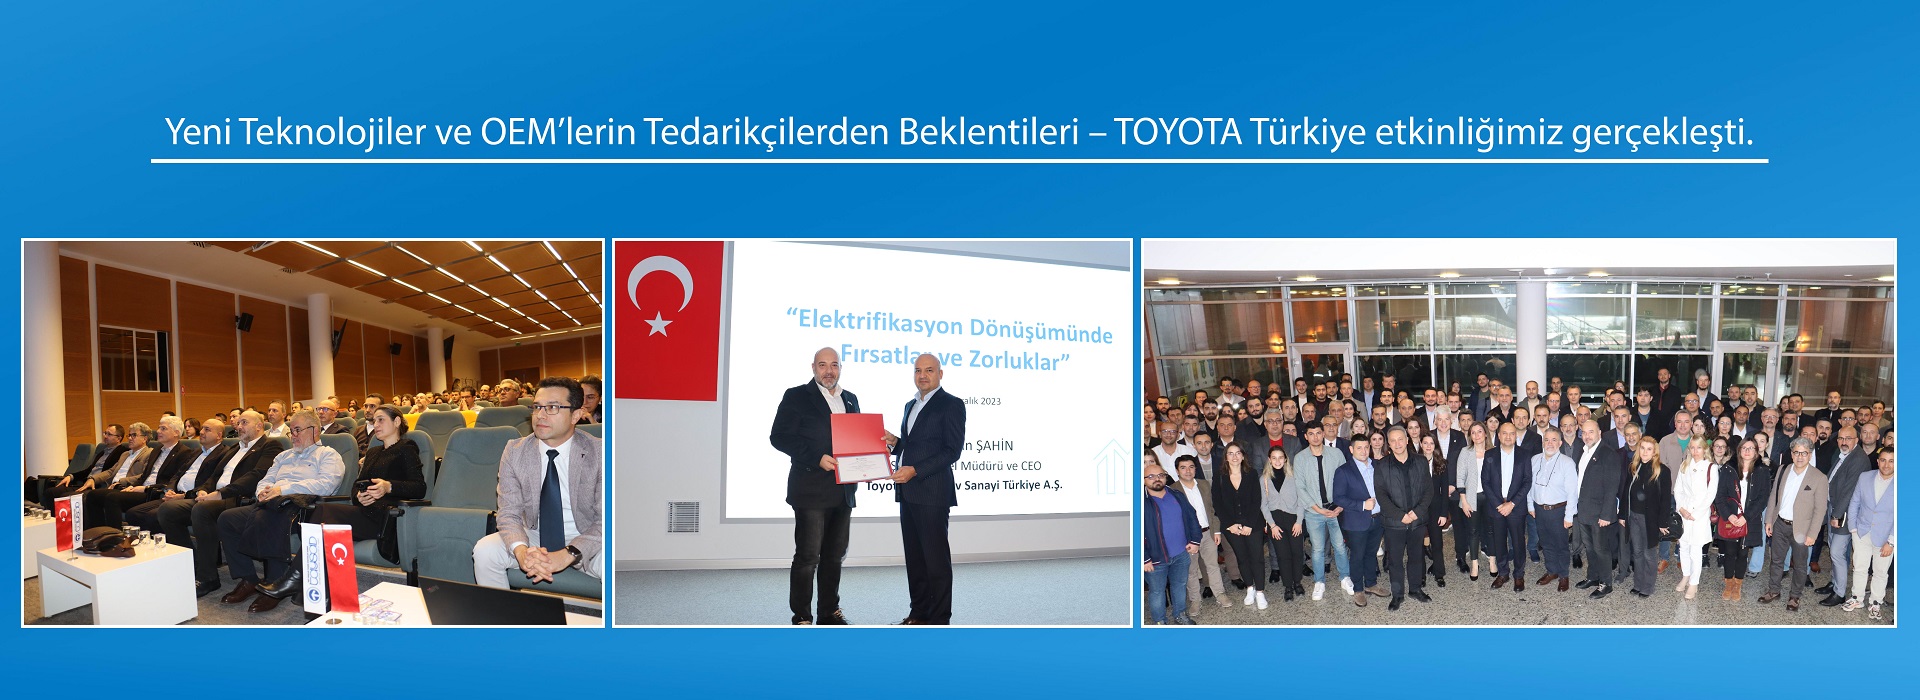 Yeni Teknolojiler ve OEM’lerin Tedarikçilerden Beklentileri – TOYOTA Türkiye etkinliğimiz gerçekleşti.